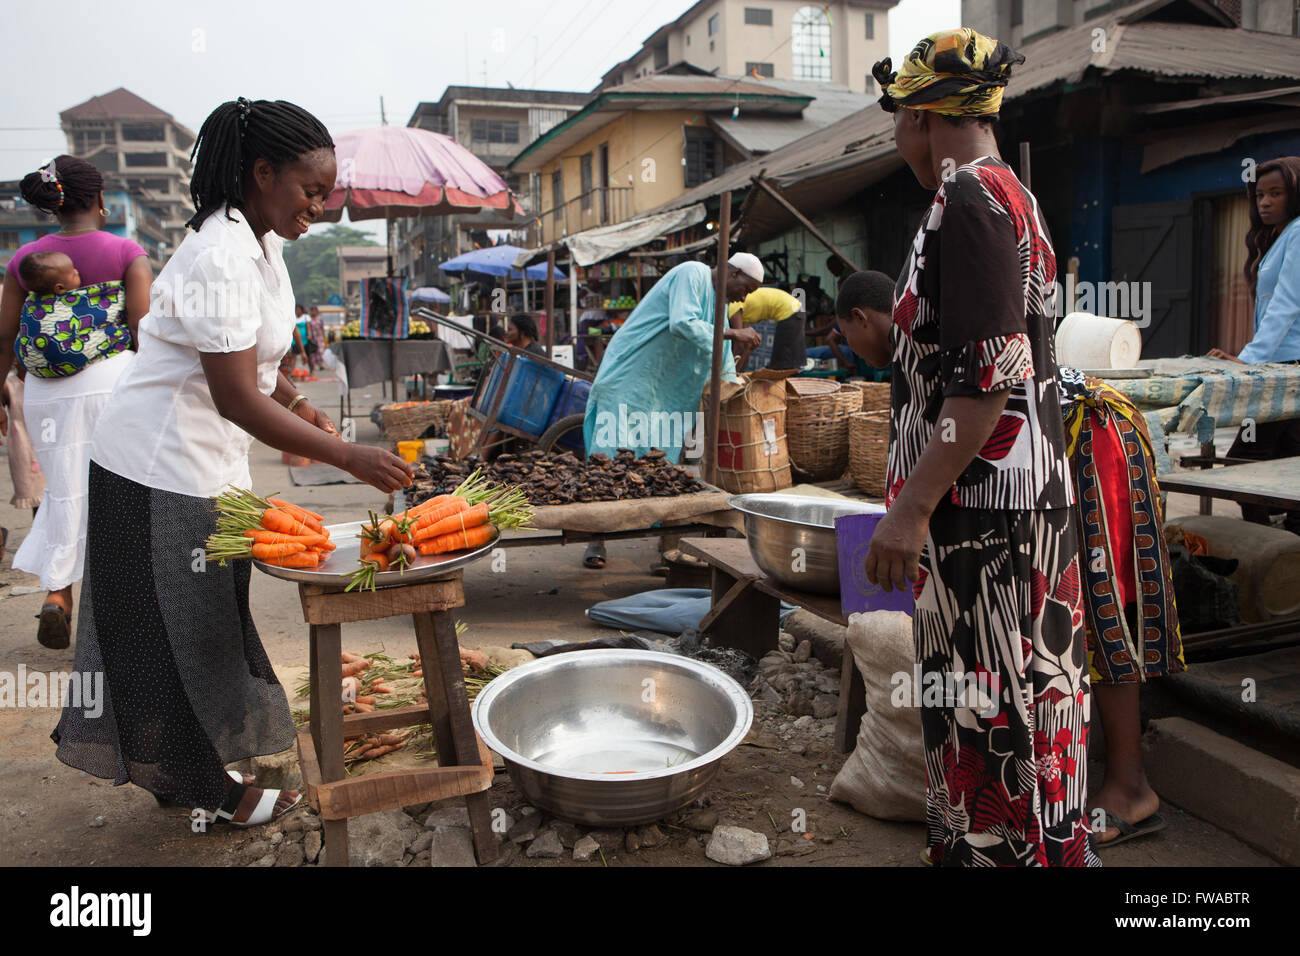 Une scène de marché de rue au Nigeria, l'Afrique Banque D'Images